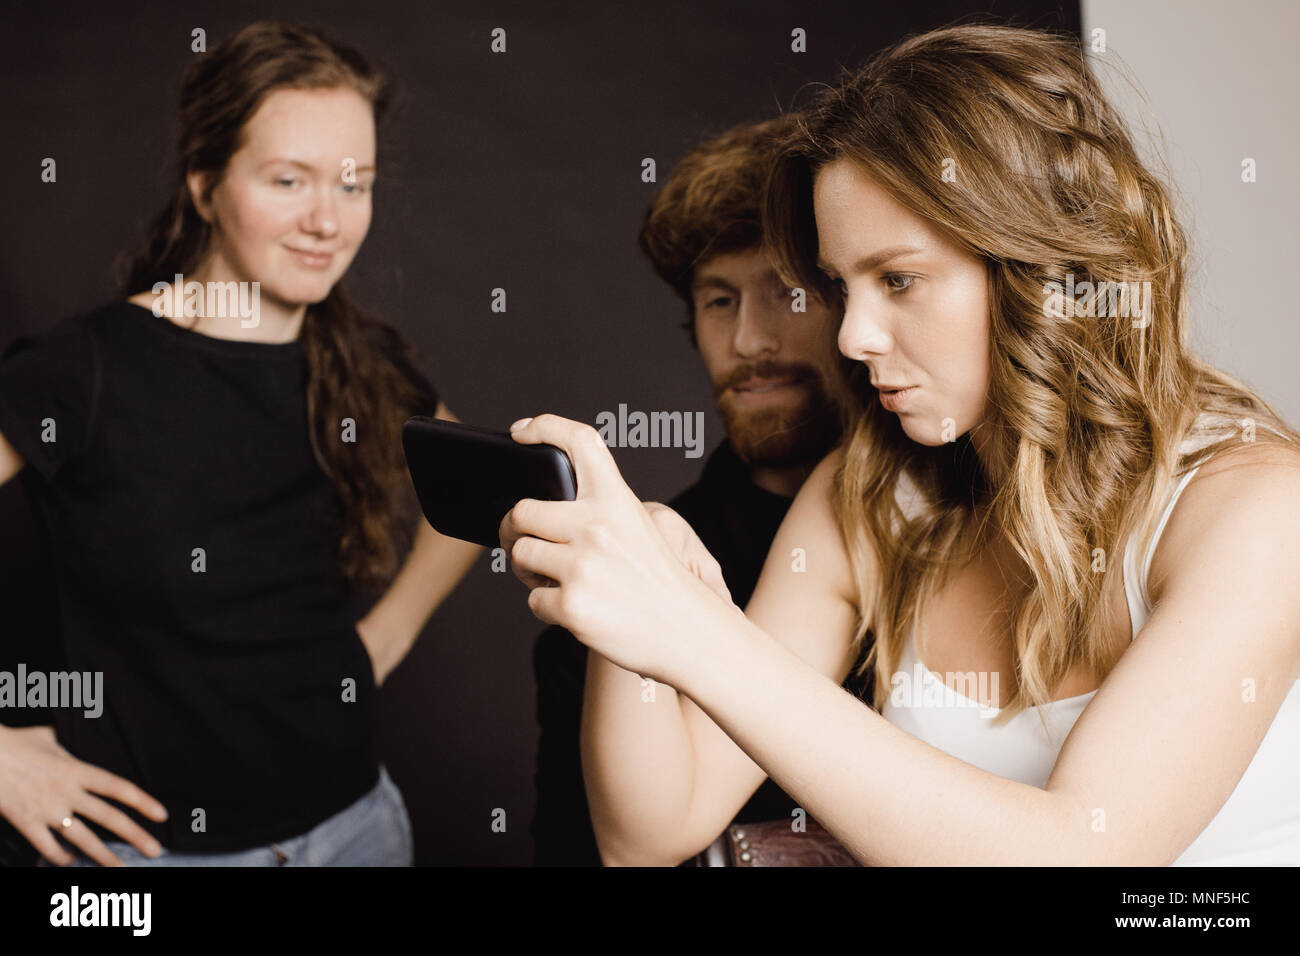 Menschen auf Bilder auf dem Smartphone suchen Stockfoto